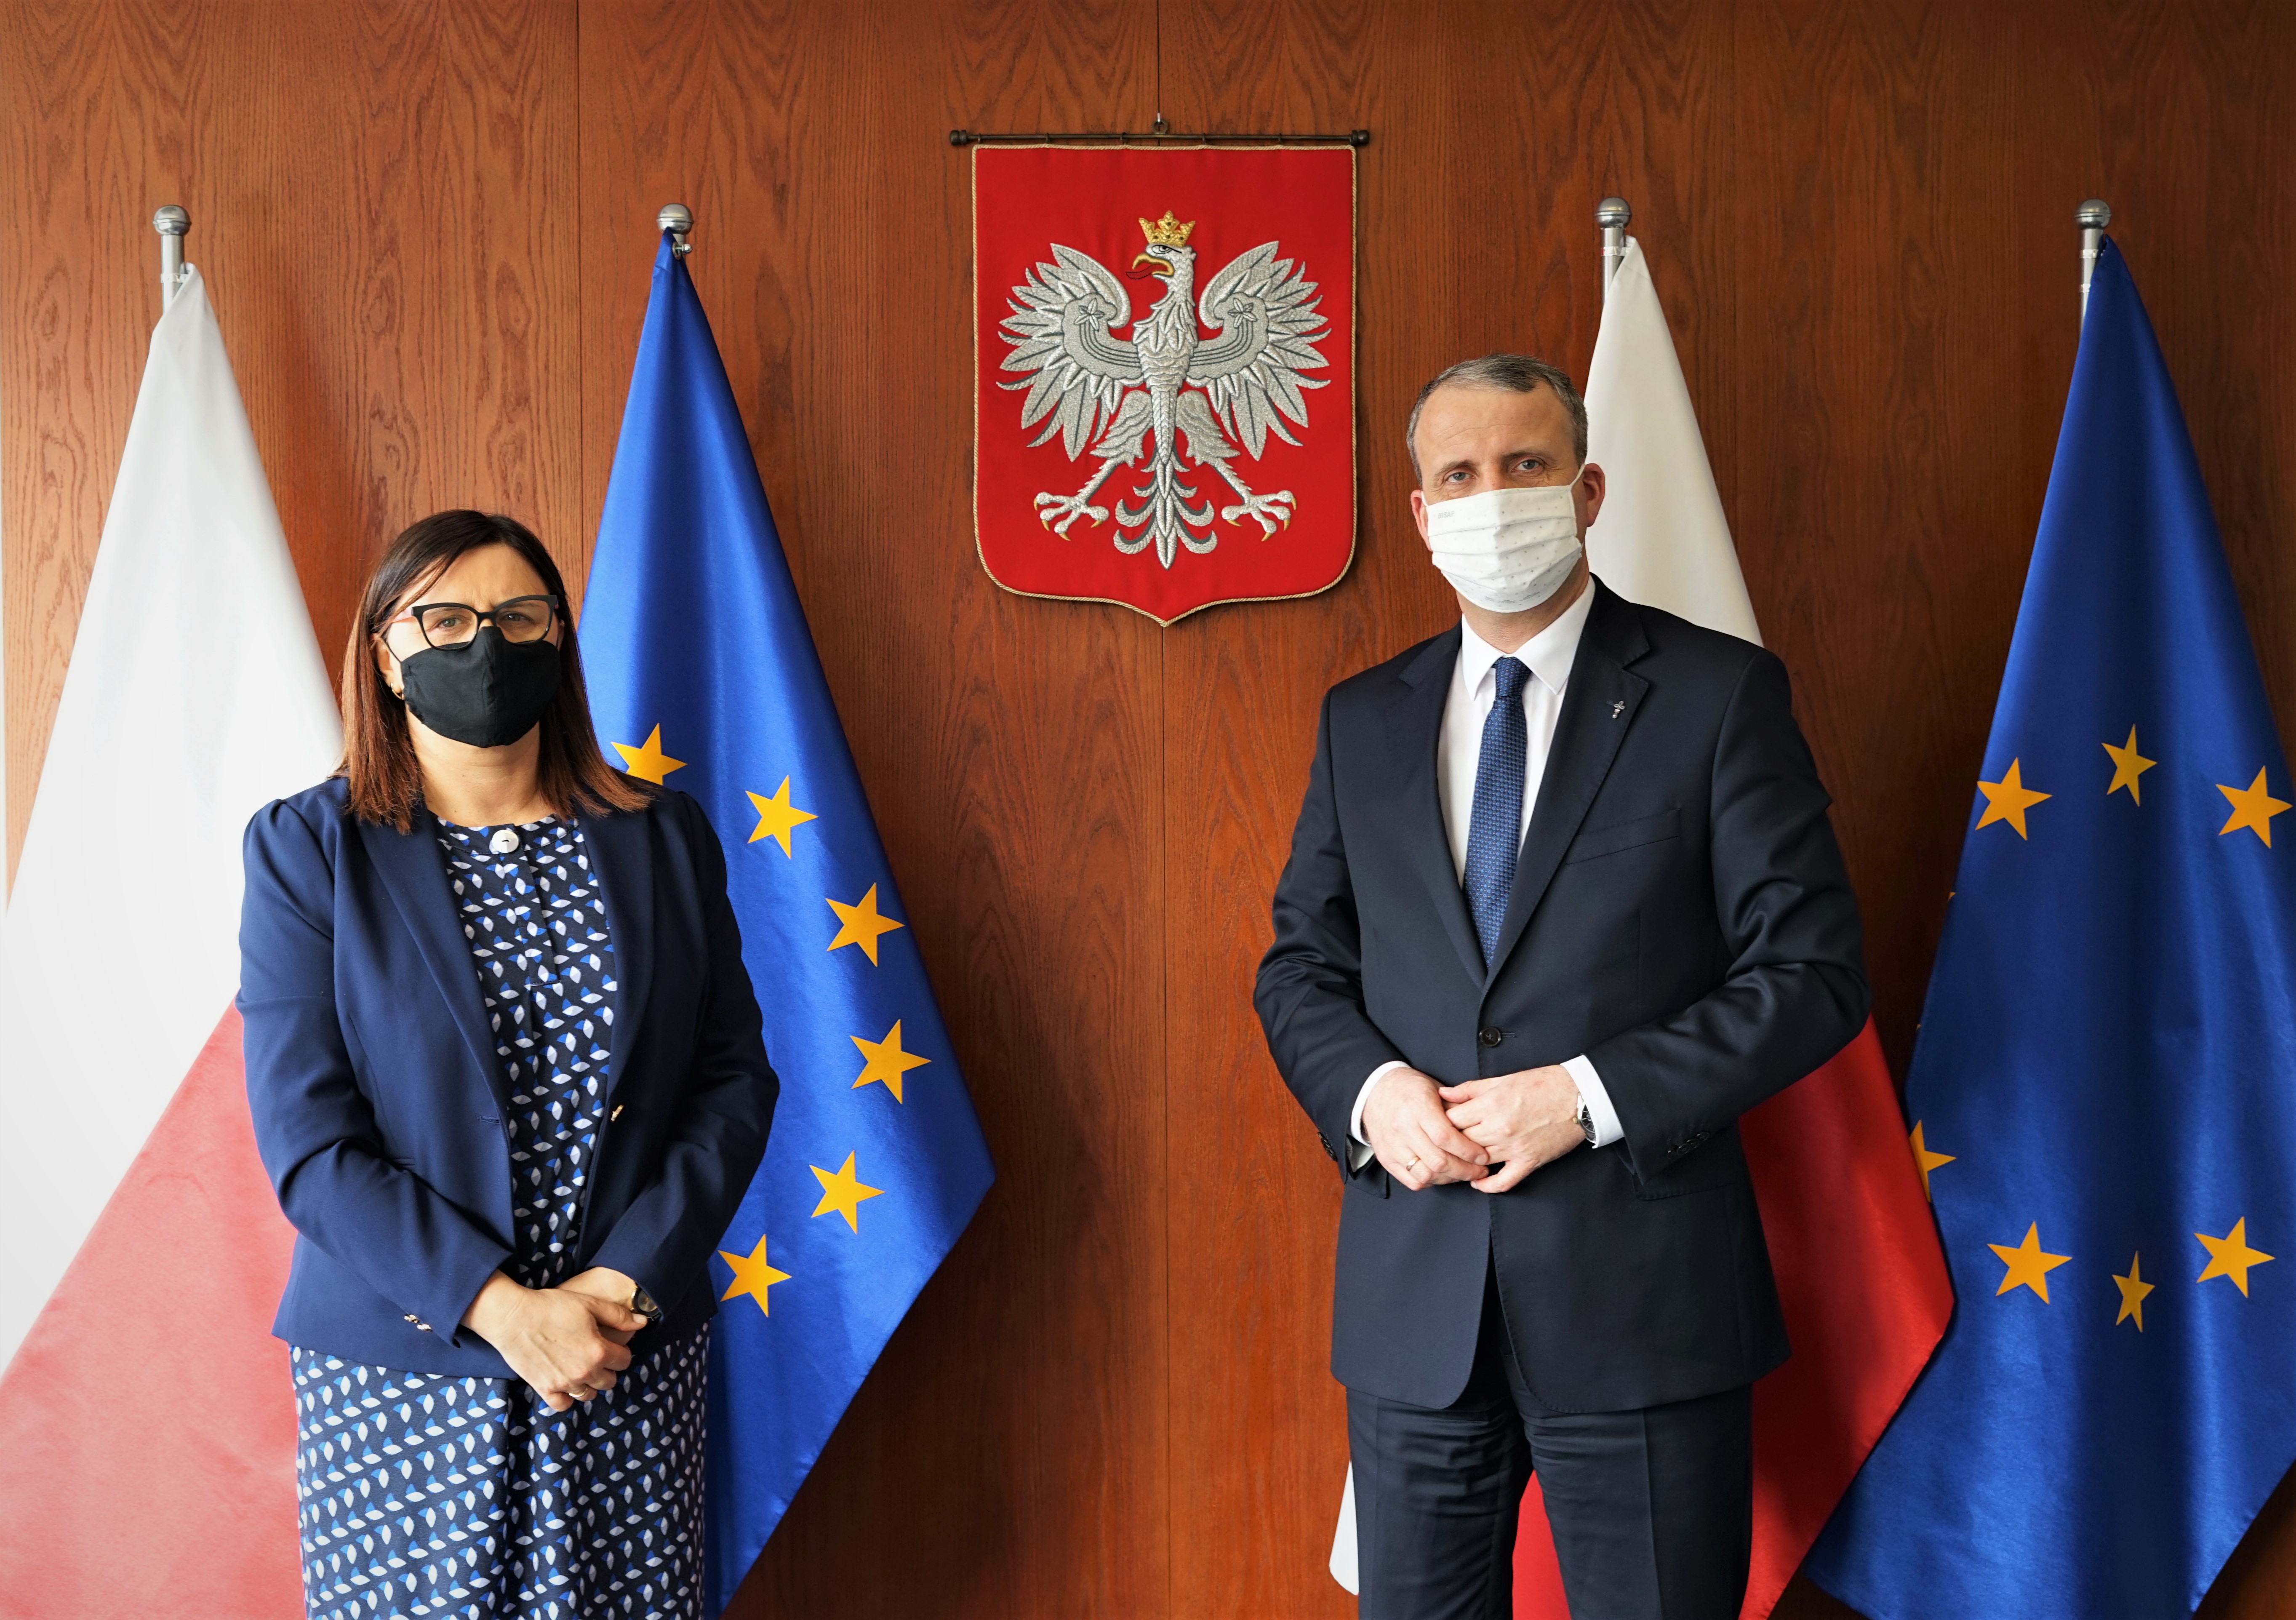 Starosta Beata Hanyżak z Wojewodą Michałem Zielińskim na tle flag Polski i Unii Europejskiej. W tle widoczne również godło.